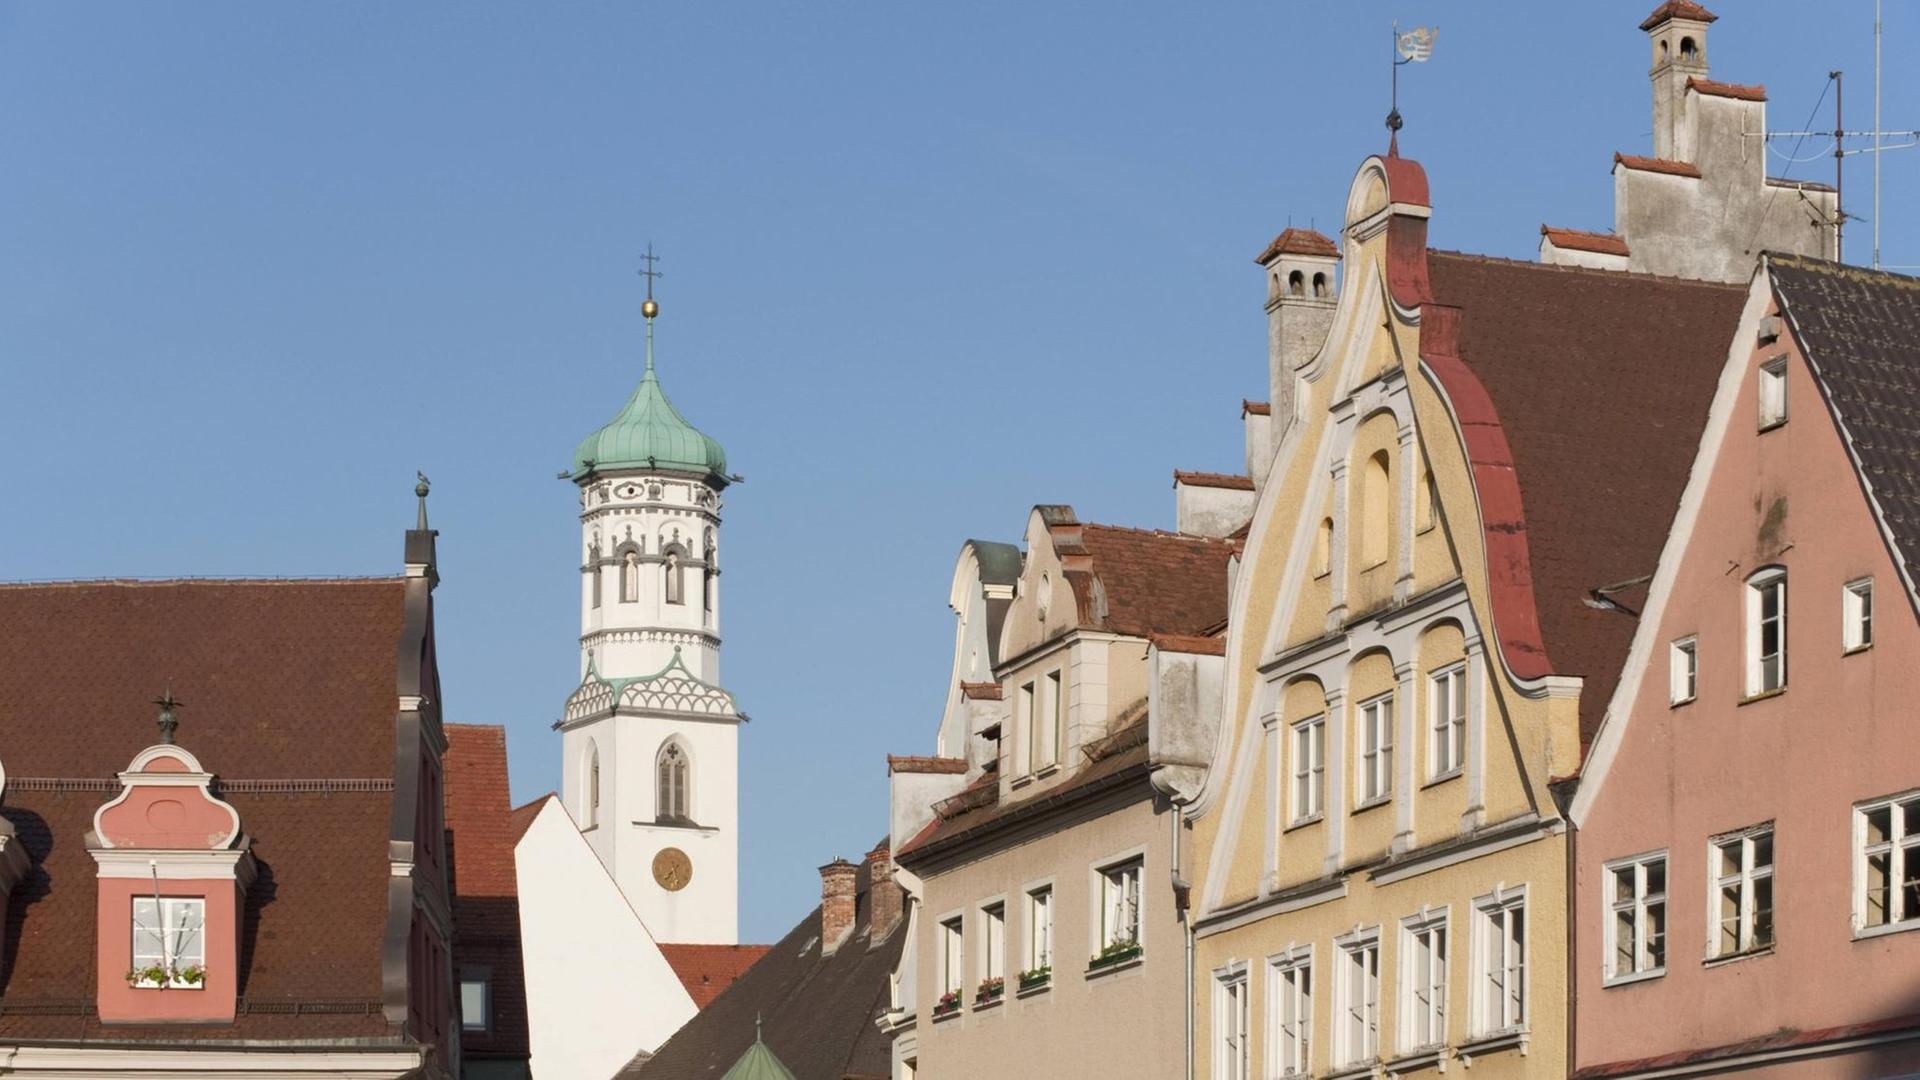 Stadtansicht von Memmingen mit der Kreuzherrenkirche im Hintergrund.